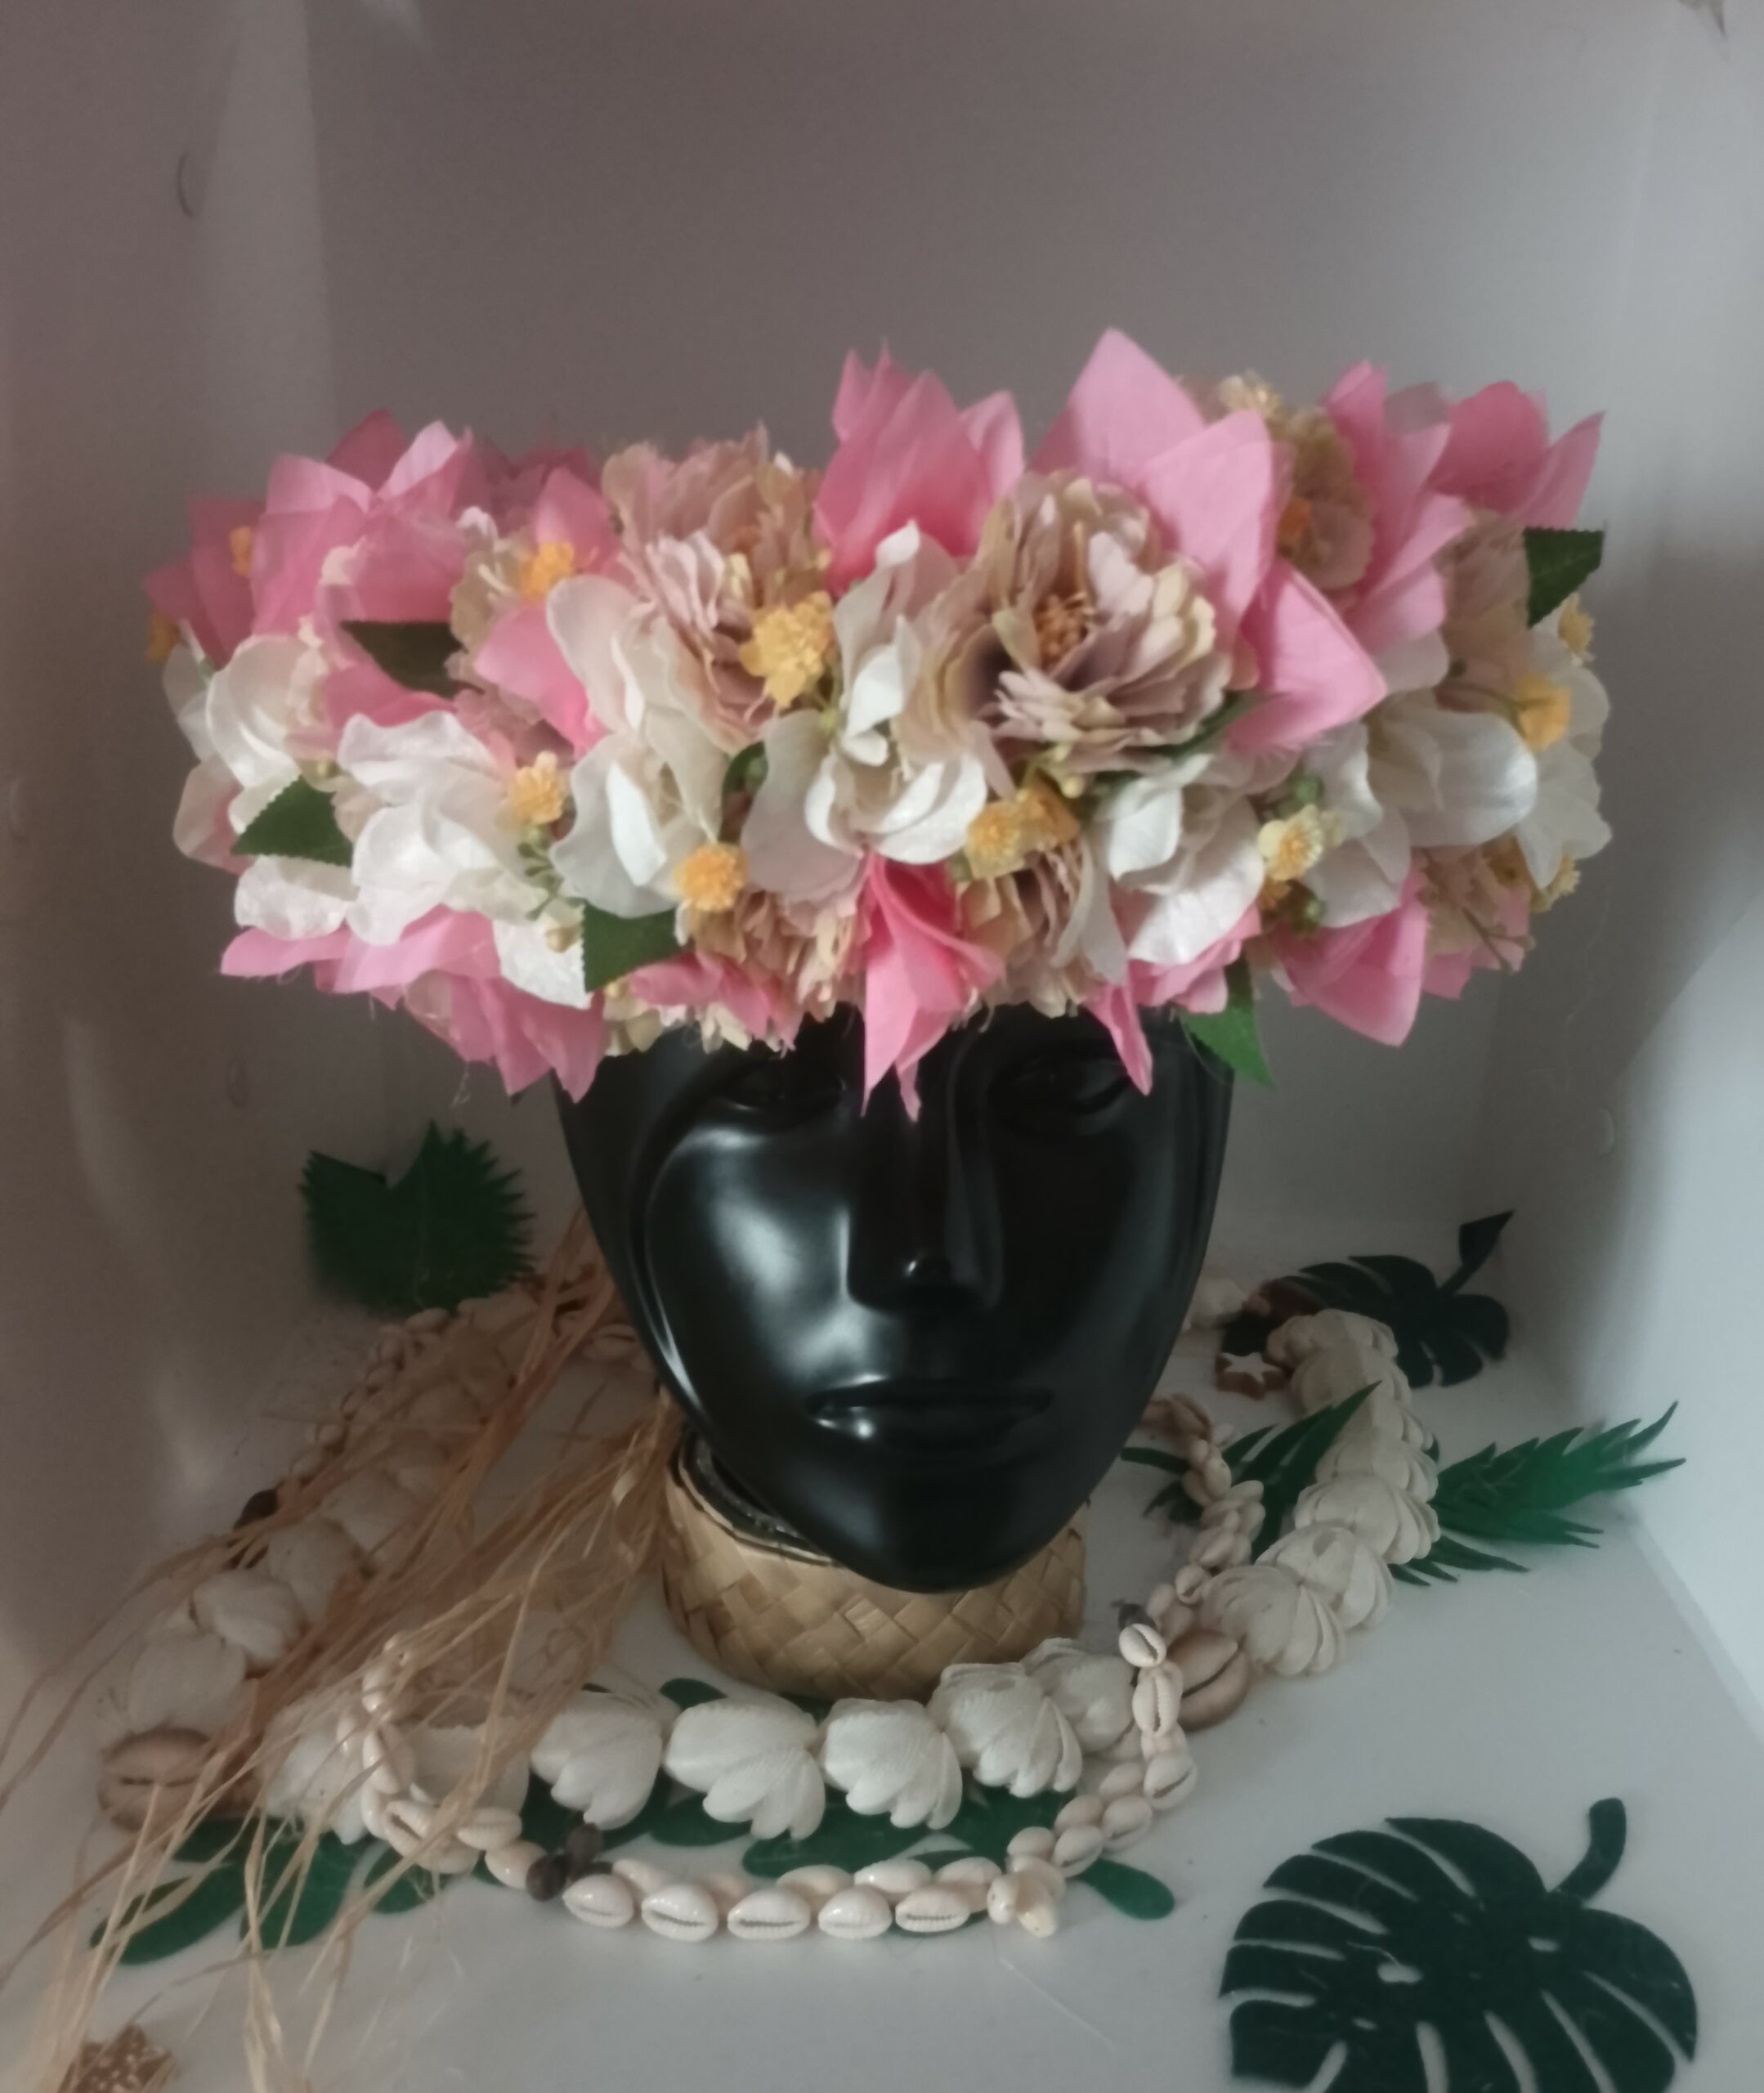 couronne de fleur rose avec boutons variés boutons d'orchidées ivoires et des bougainvilliers roses pâles by Vaite.e.Tiare créations